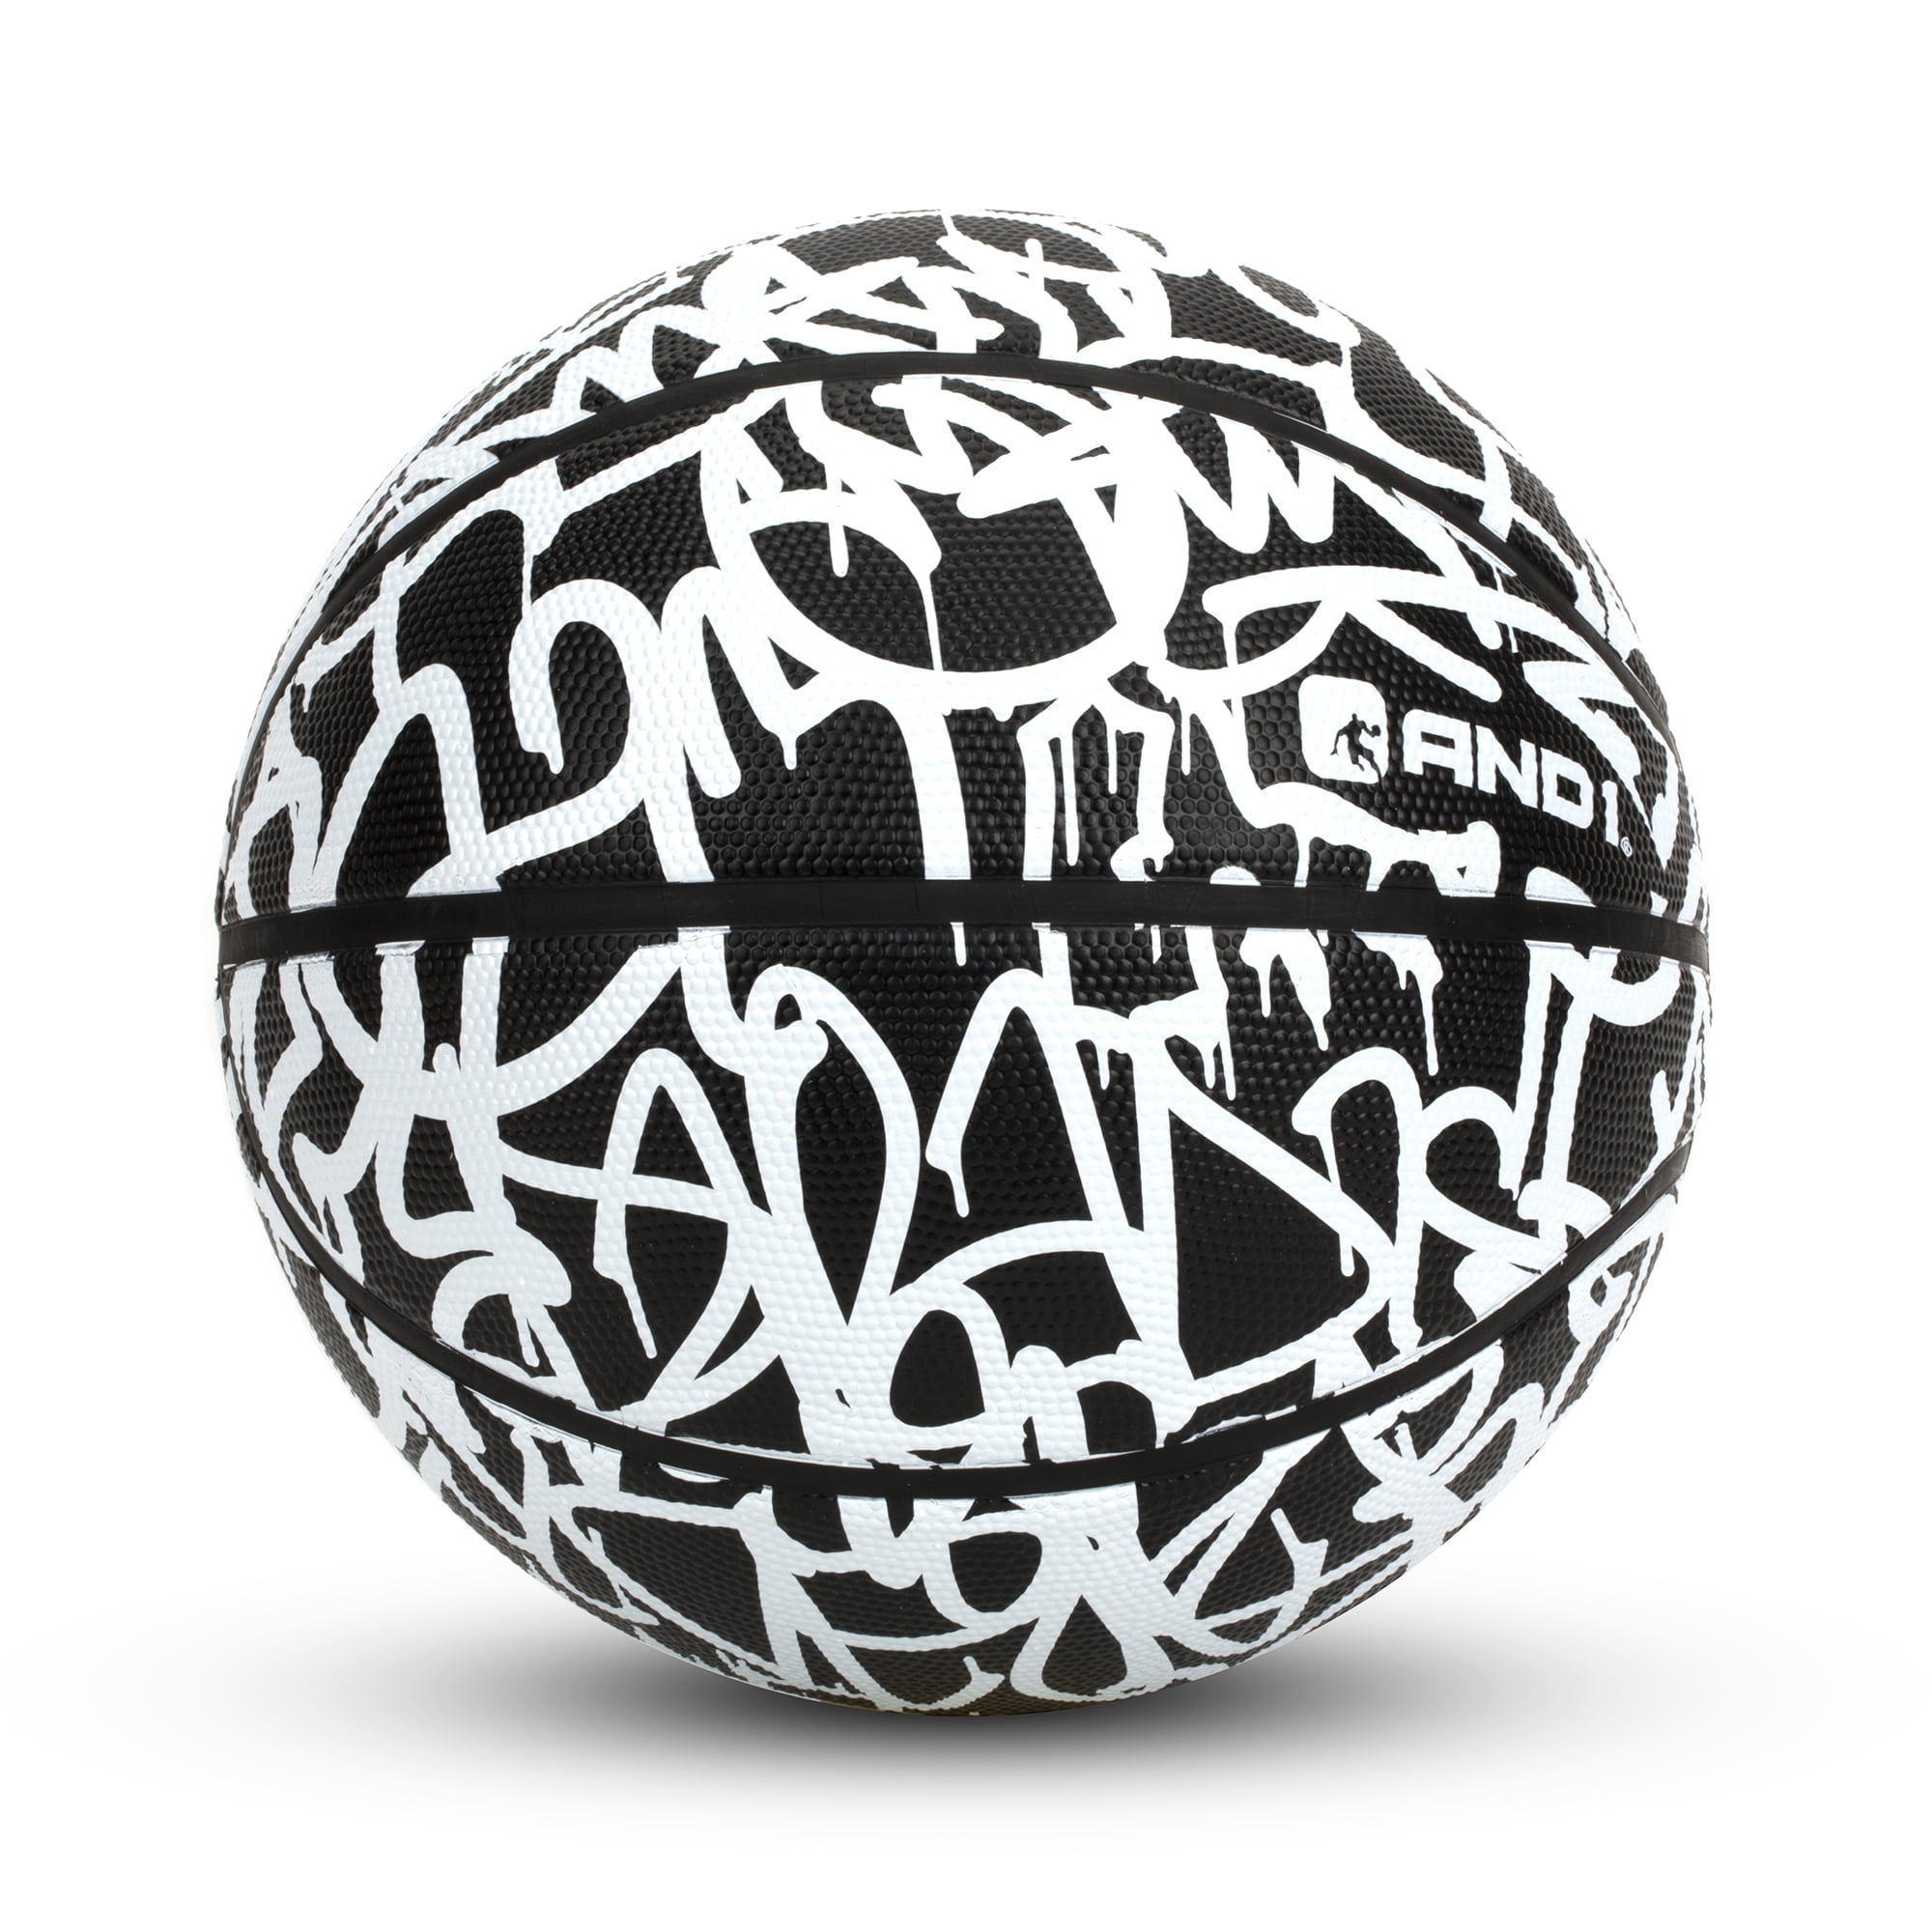 AND1 MINI GRAFFITI BASKETBALL MINI SIZE 22.5" Colors Black & White 